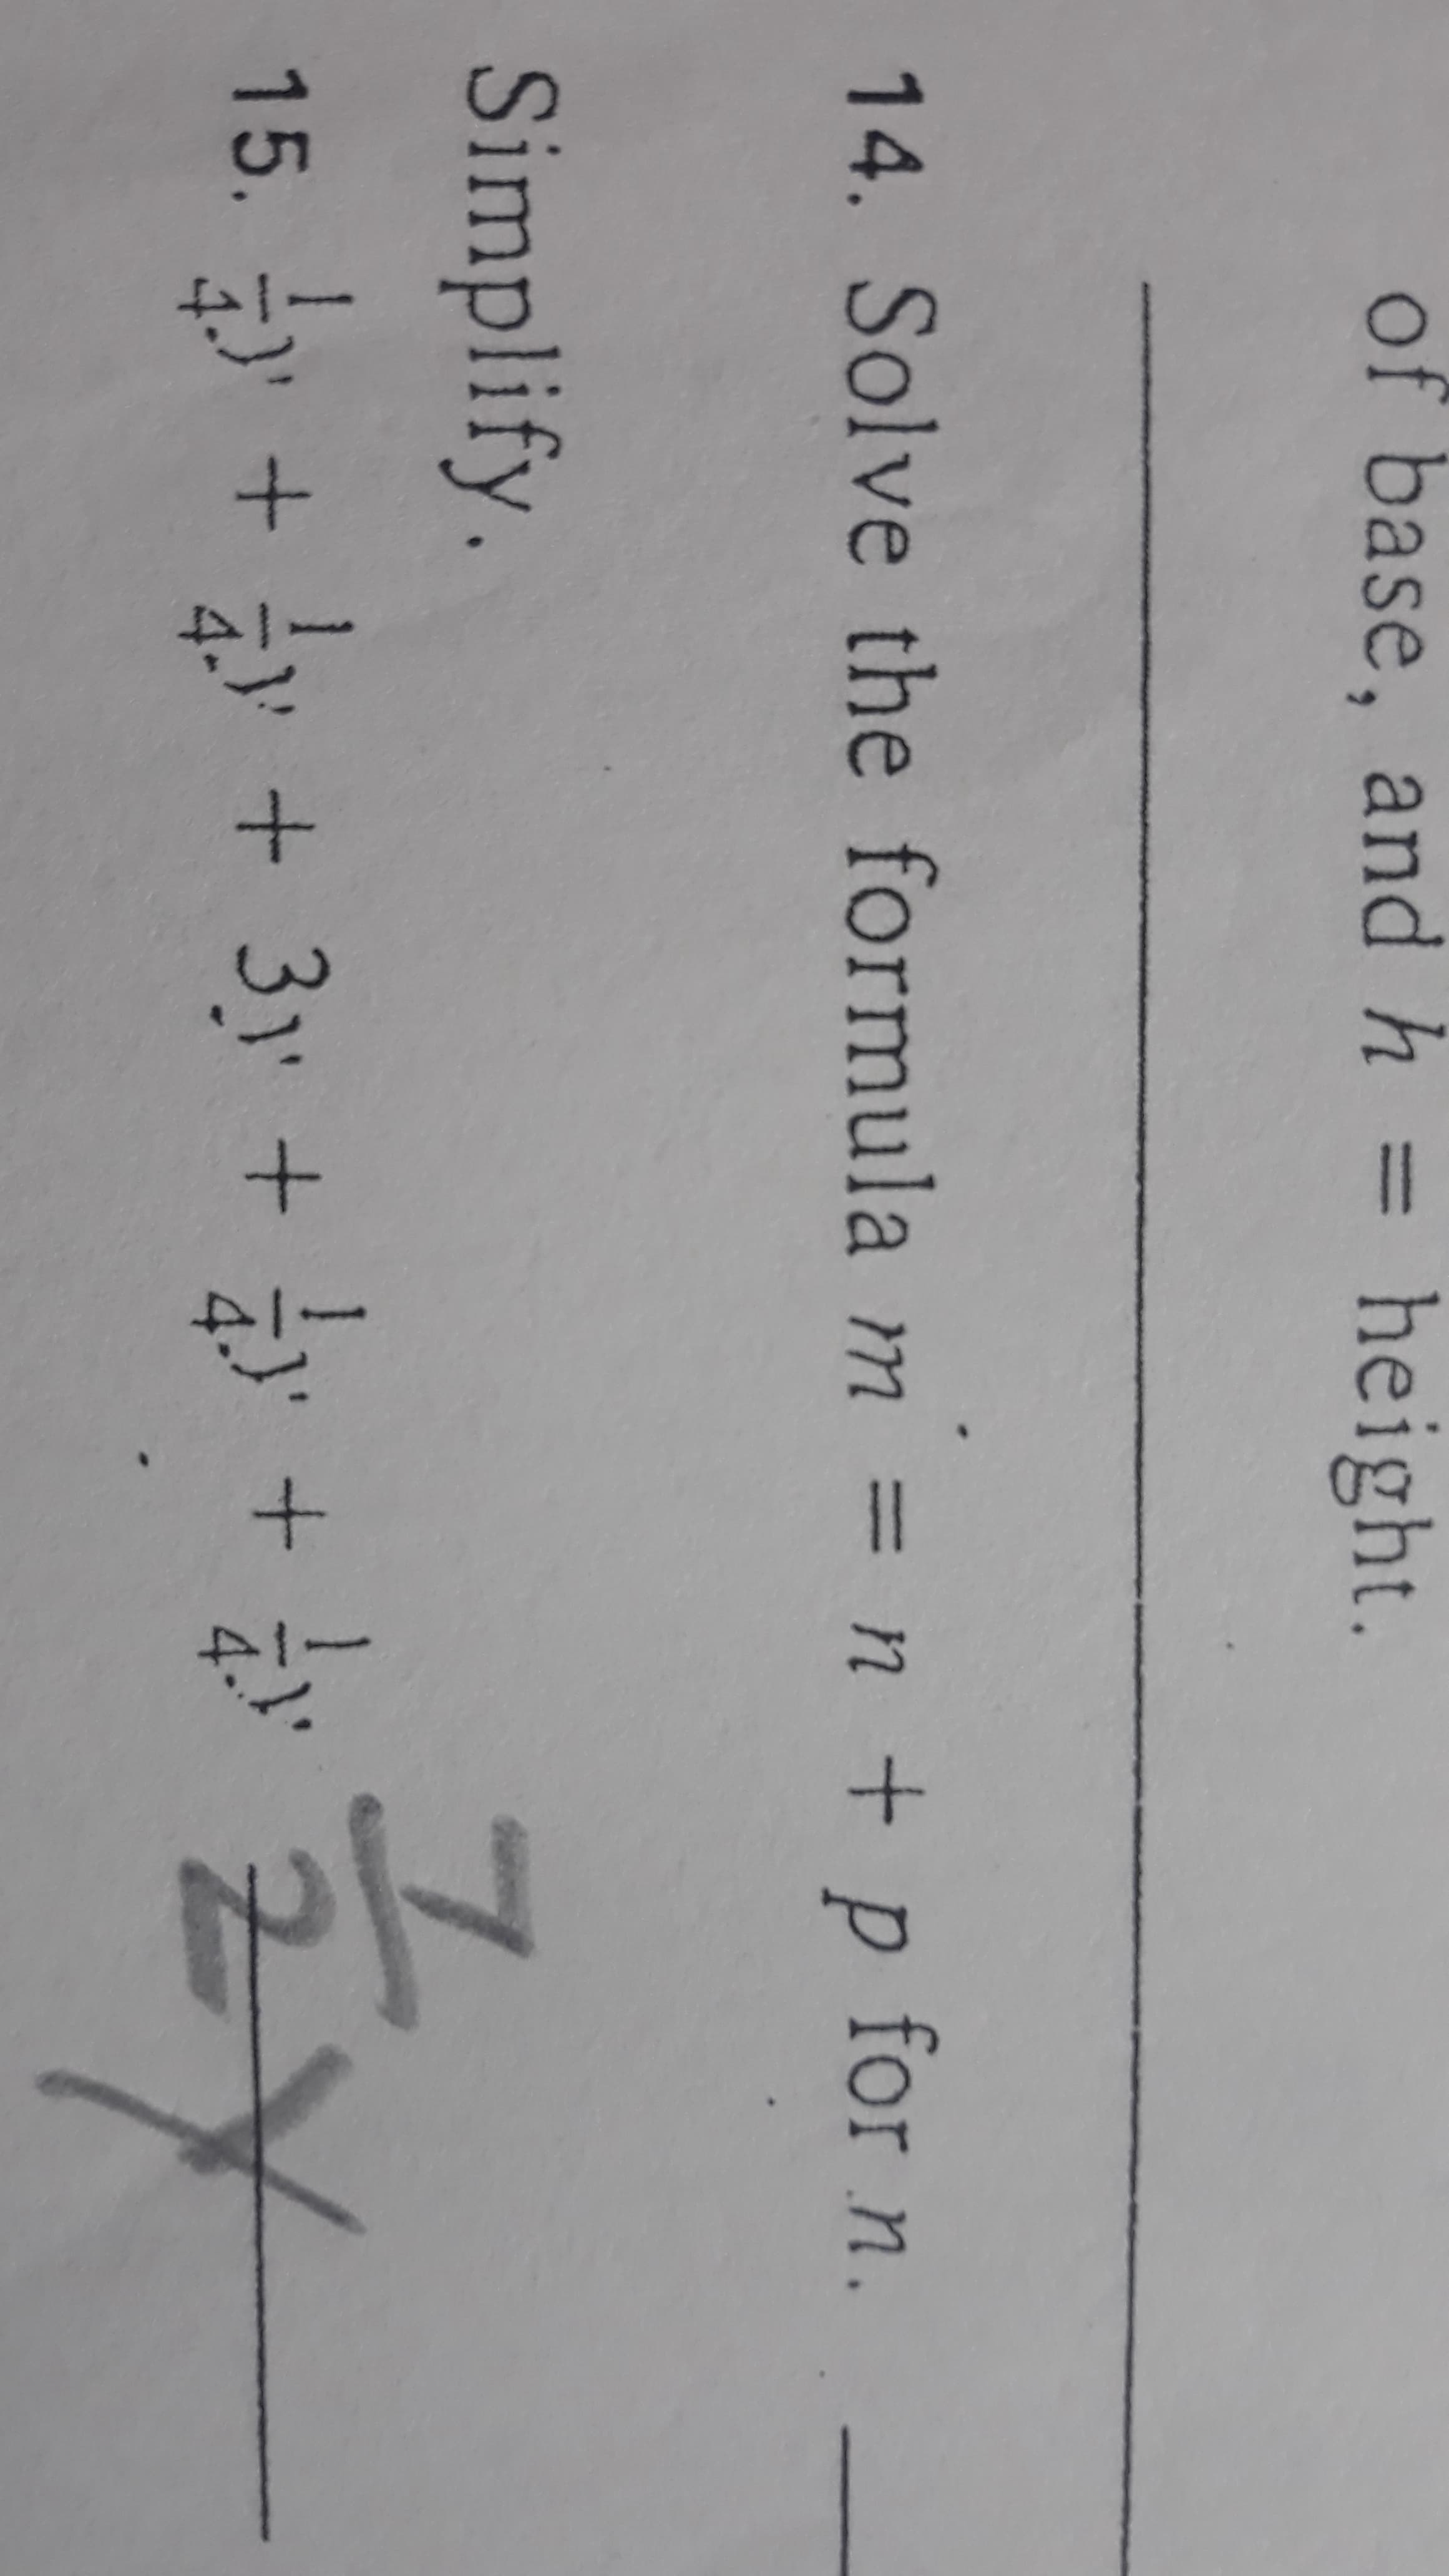 14. Solve the formula m = n + p for n
%3D
